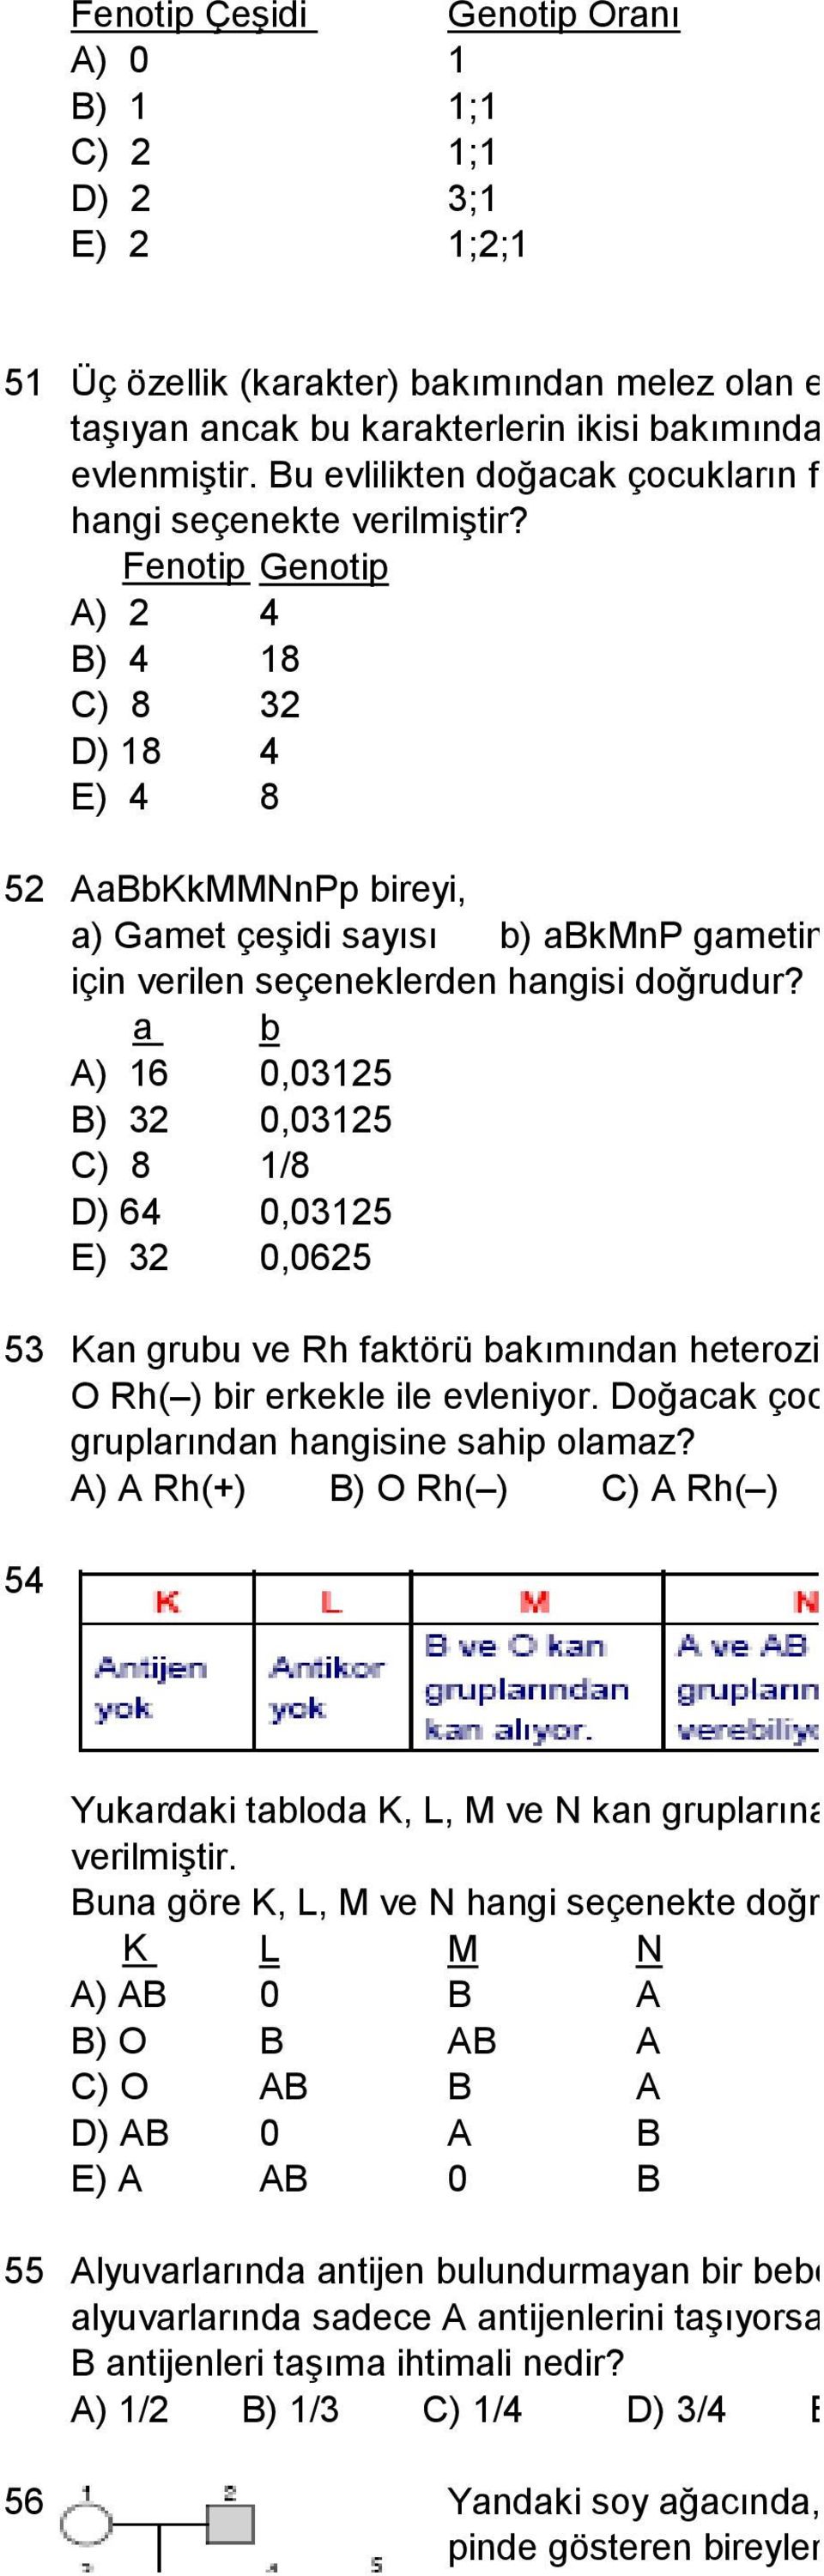 Fenotip Genotip A) 2 4 B) 4 18 C) 8 32 D) 18 4 E) 4 8 52 AaBbKkMMNnPp bireyi, a) Gamet çeşidi sayısı b) abkmnp gametinin oluşma ihtimali için verilen seçeneklerden hangisi doğrudur?